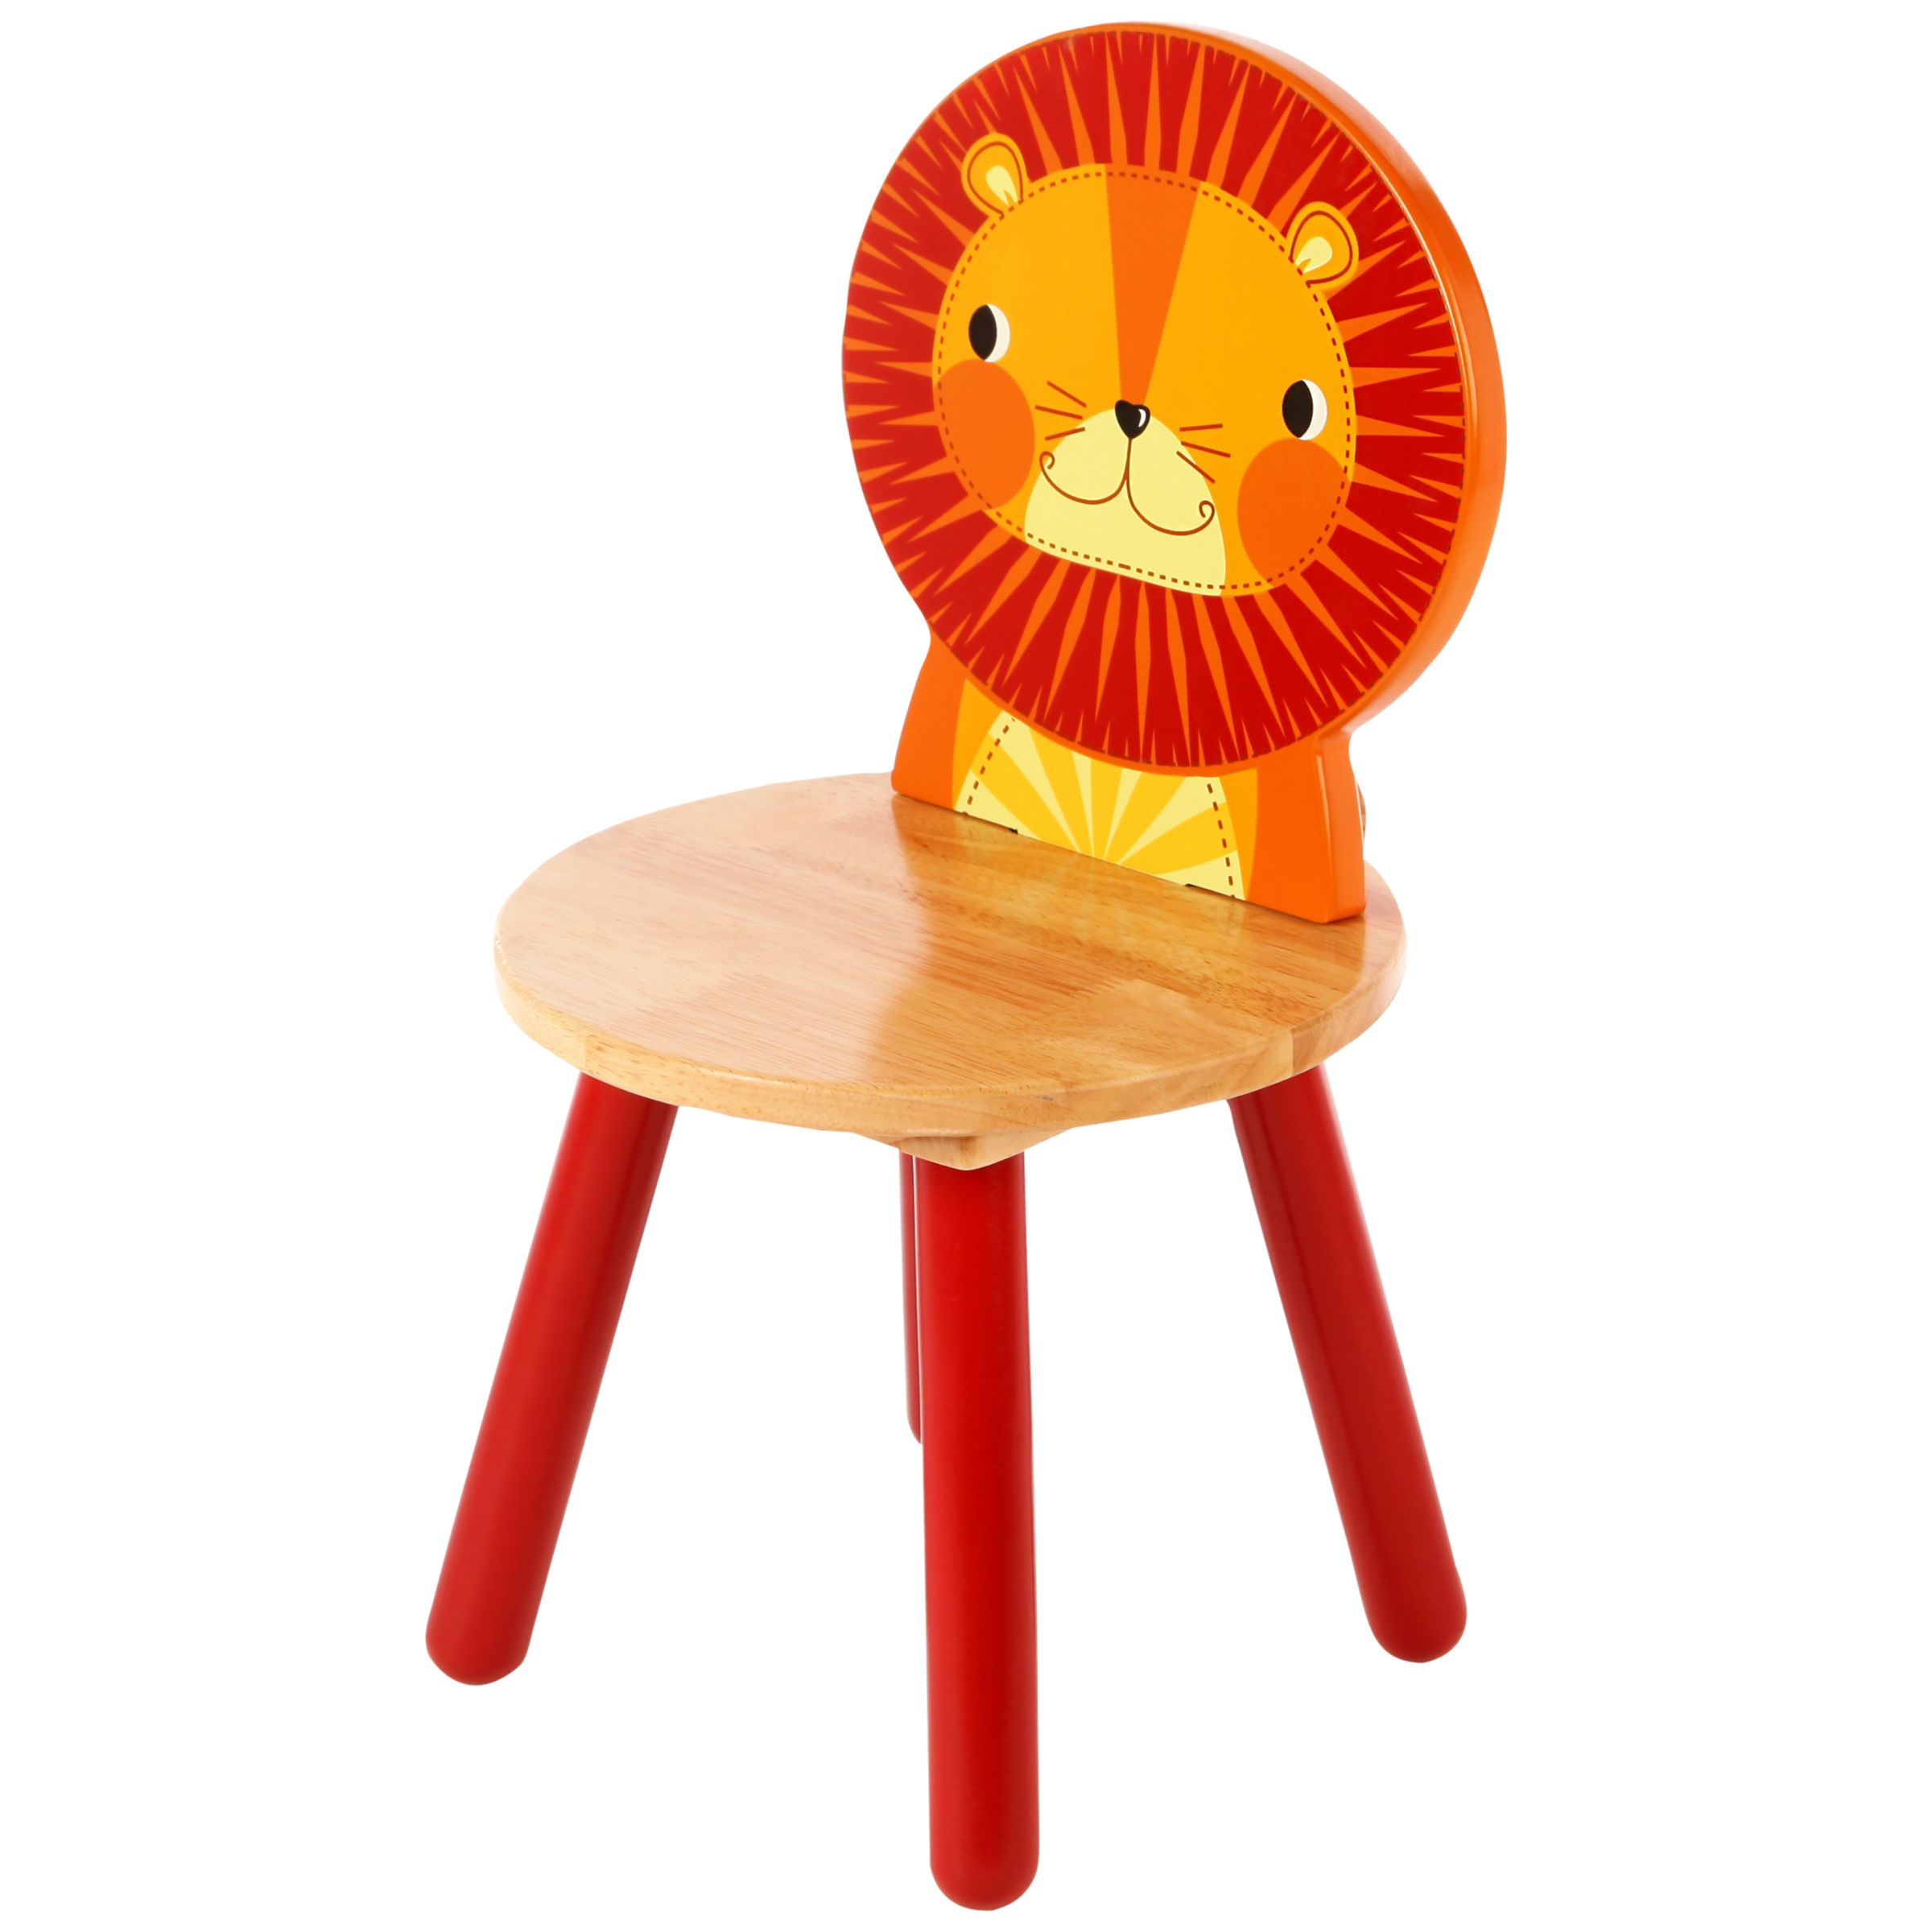 John Crane Chair, Lion